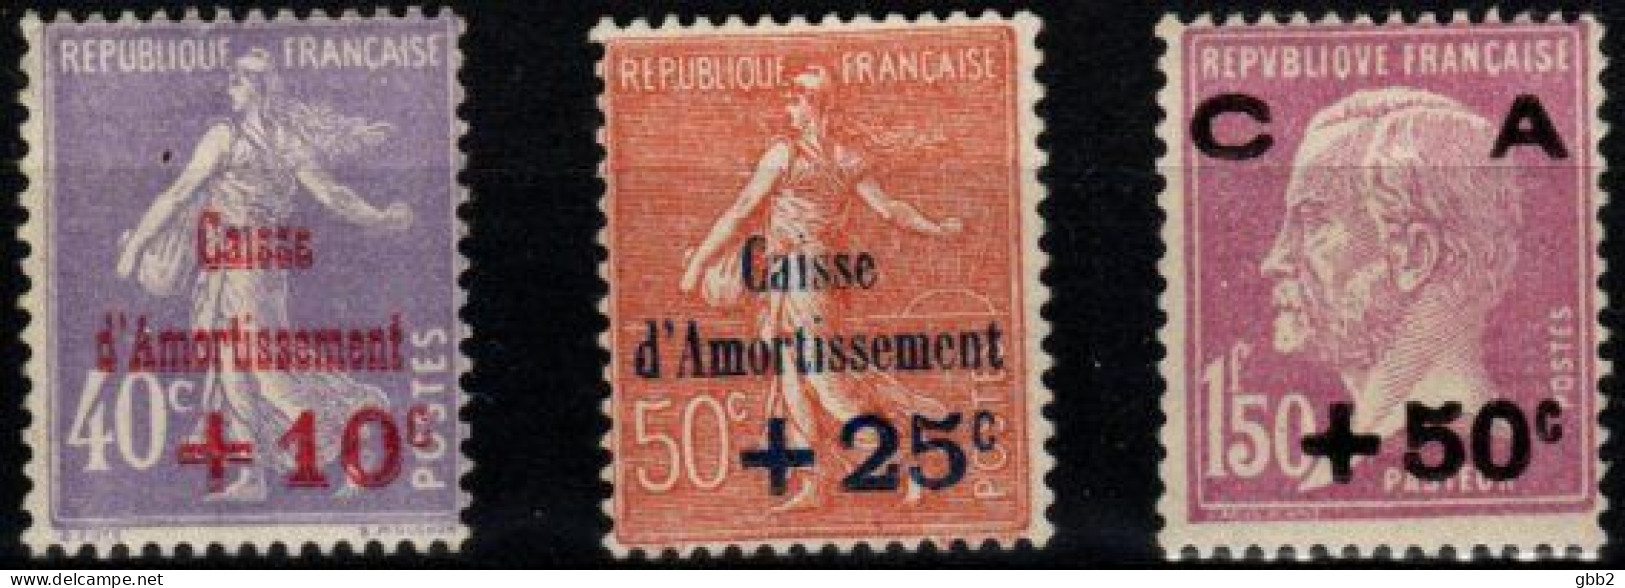 FRANCE - YT N° 249 à 251 "Caisse D'amortissement" 2ème Série. Neuf** LUXE. - 1927-31 Caisse D'Amortissement